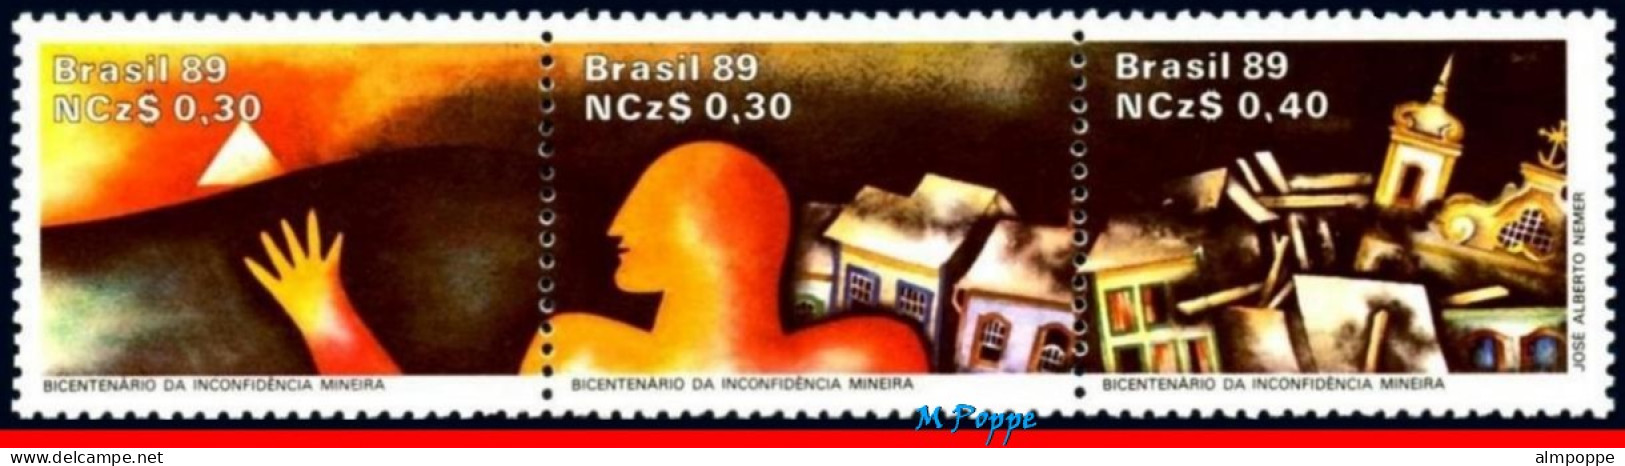 Ref. BR-2166-FO BRAZIL 1989 - INDEPENDENCE MOVEMENT,CONSPIRACY, MINAS, MI# 2295-97,SHEET MNH, HISTORY 30V Sc# 2166 - Blocks & Sheetlets